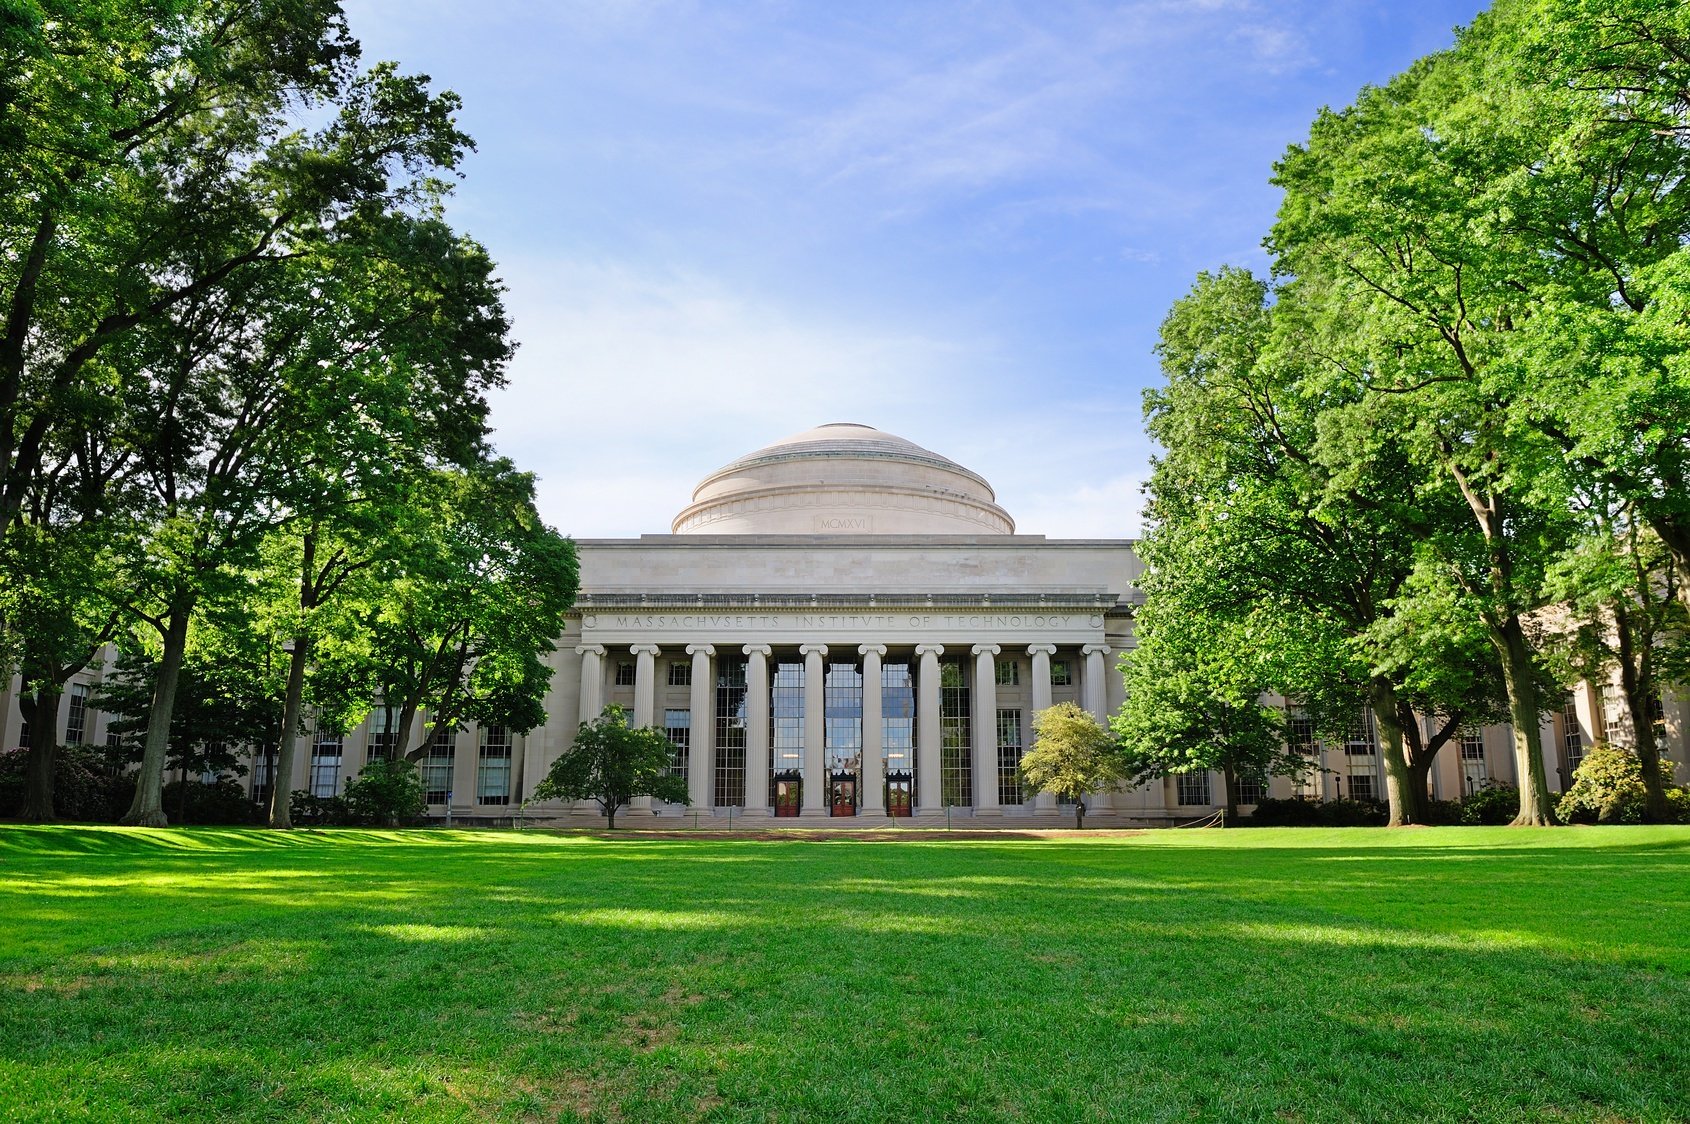 Is MIT an elite school?